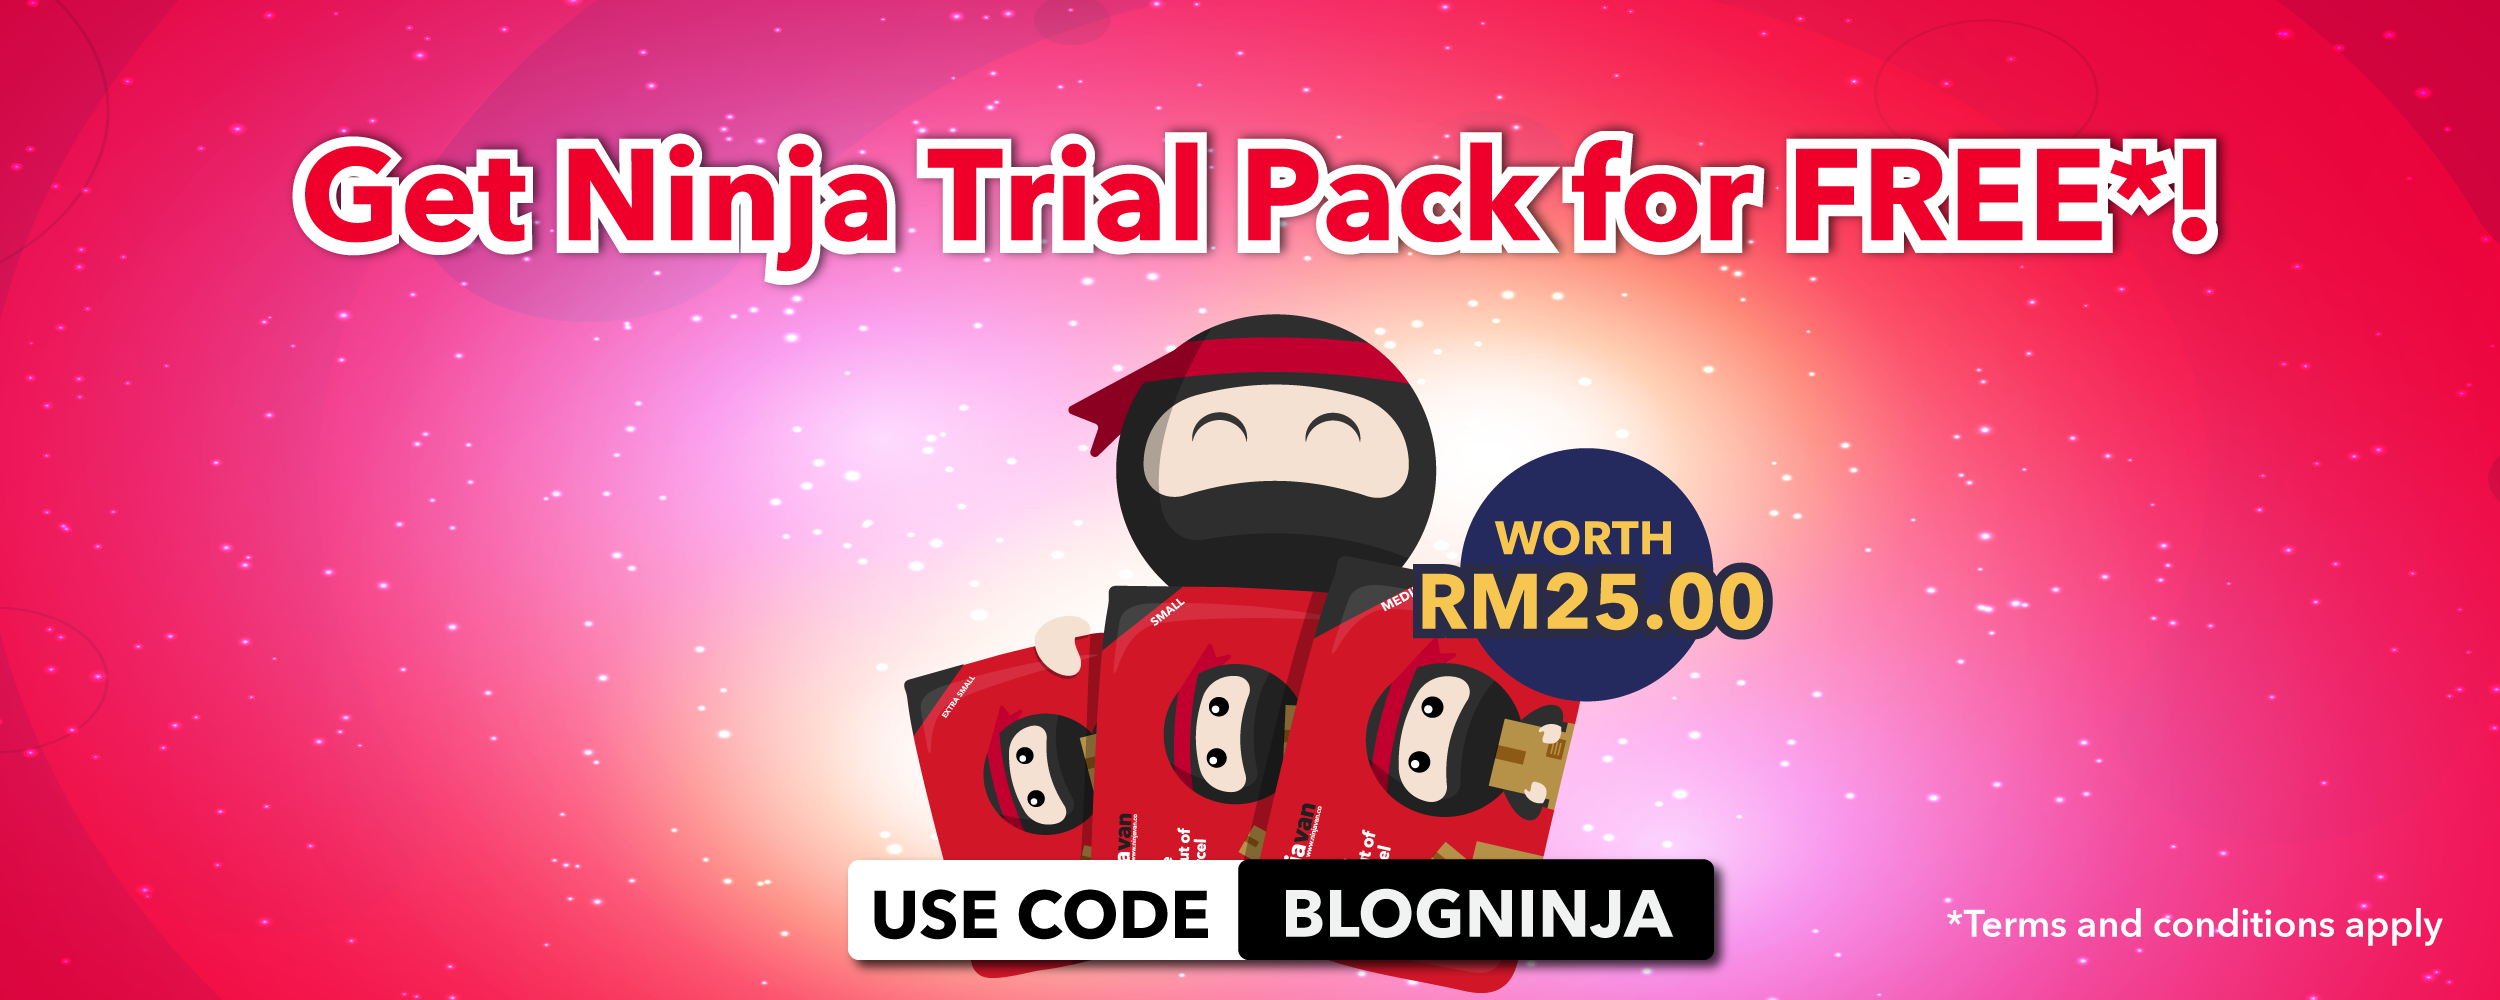 Ninja trial pack